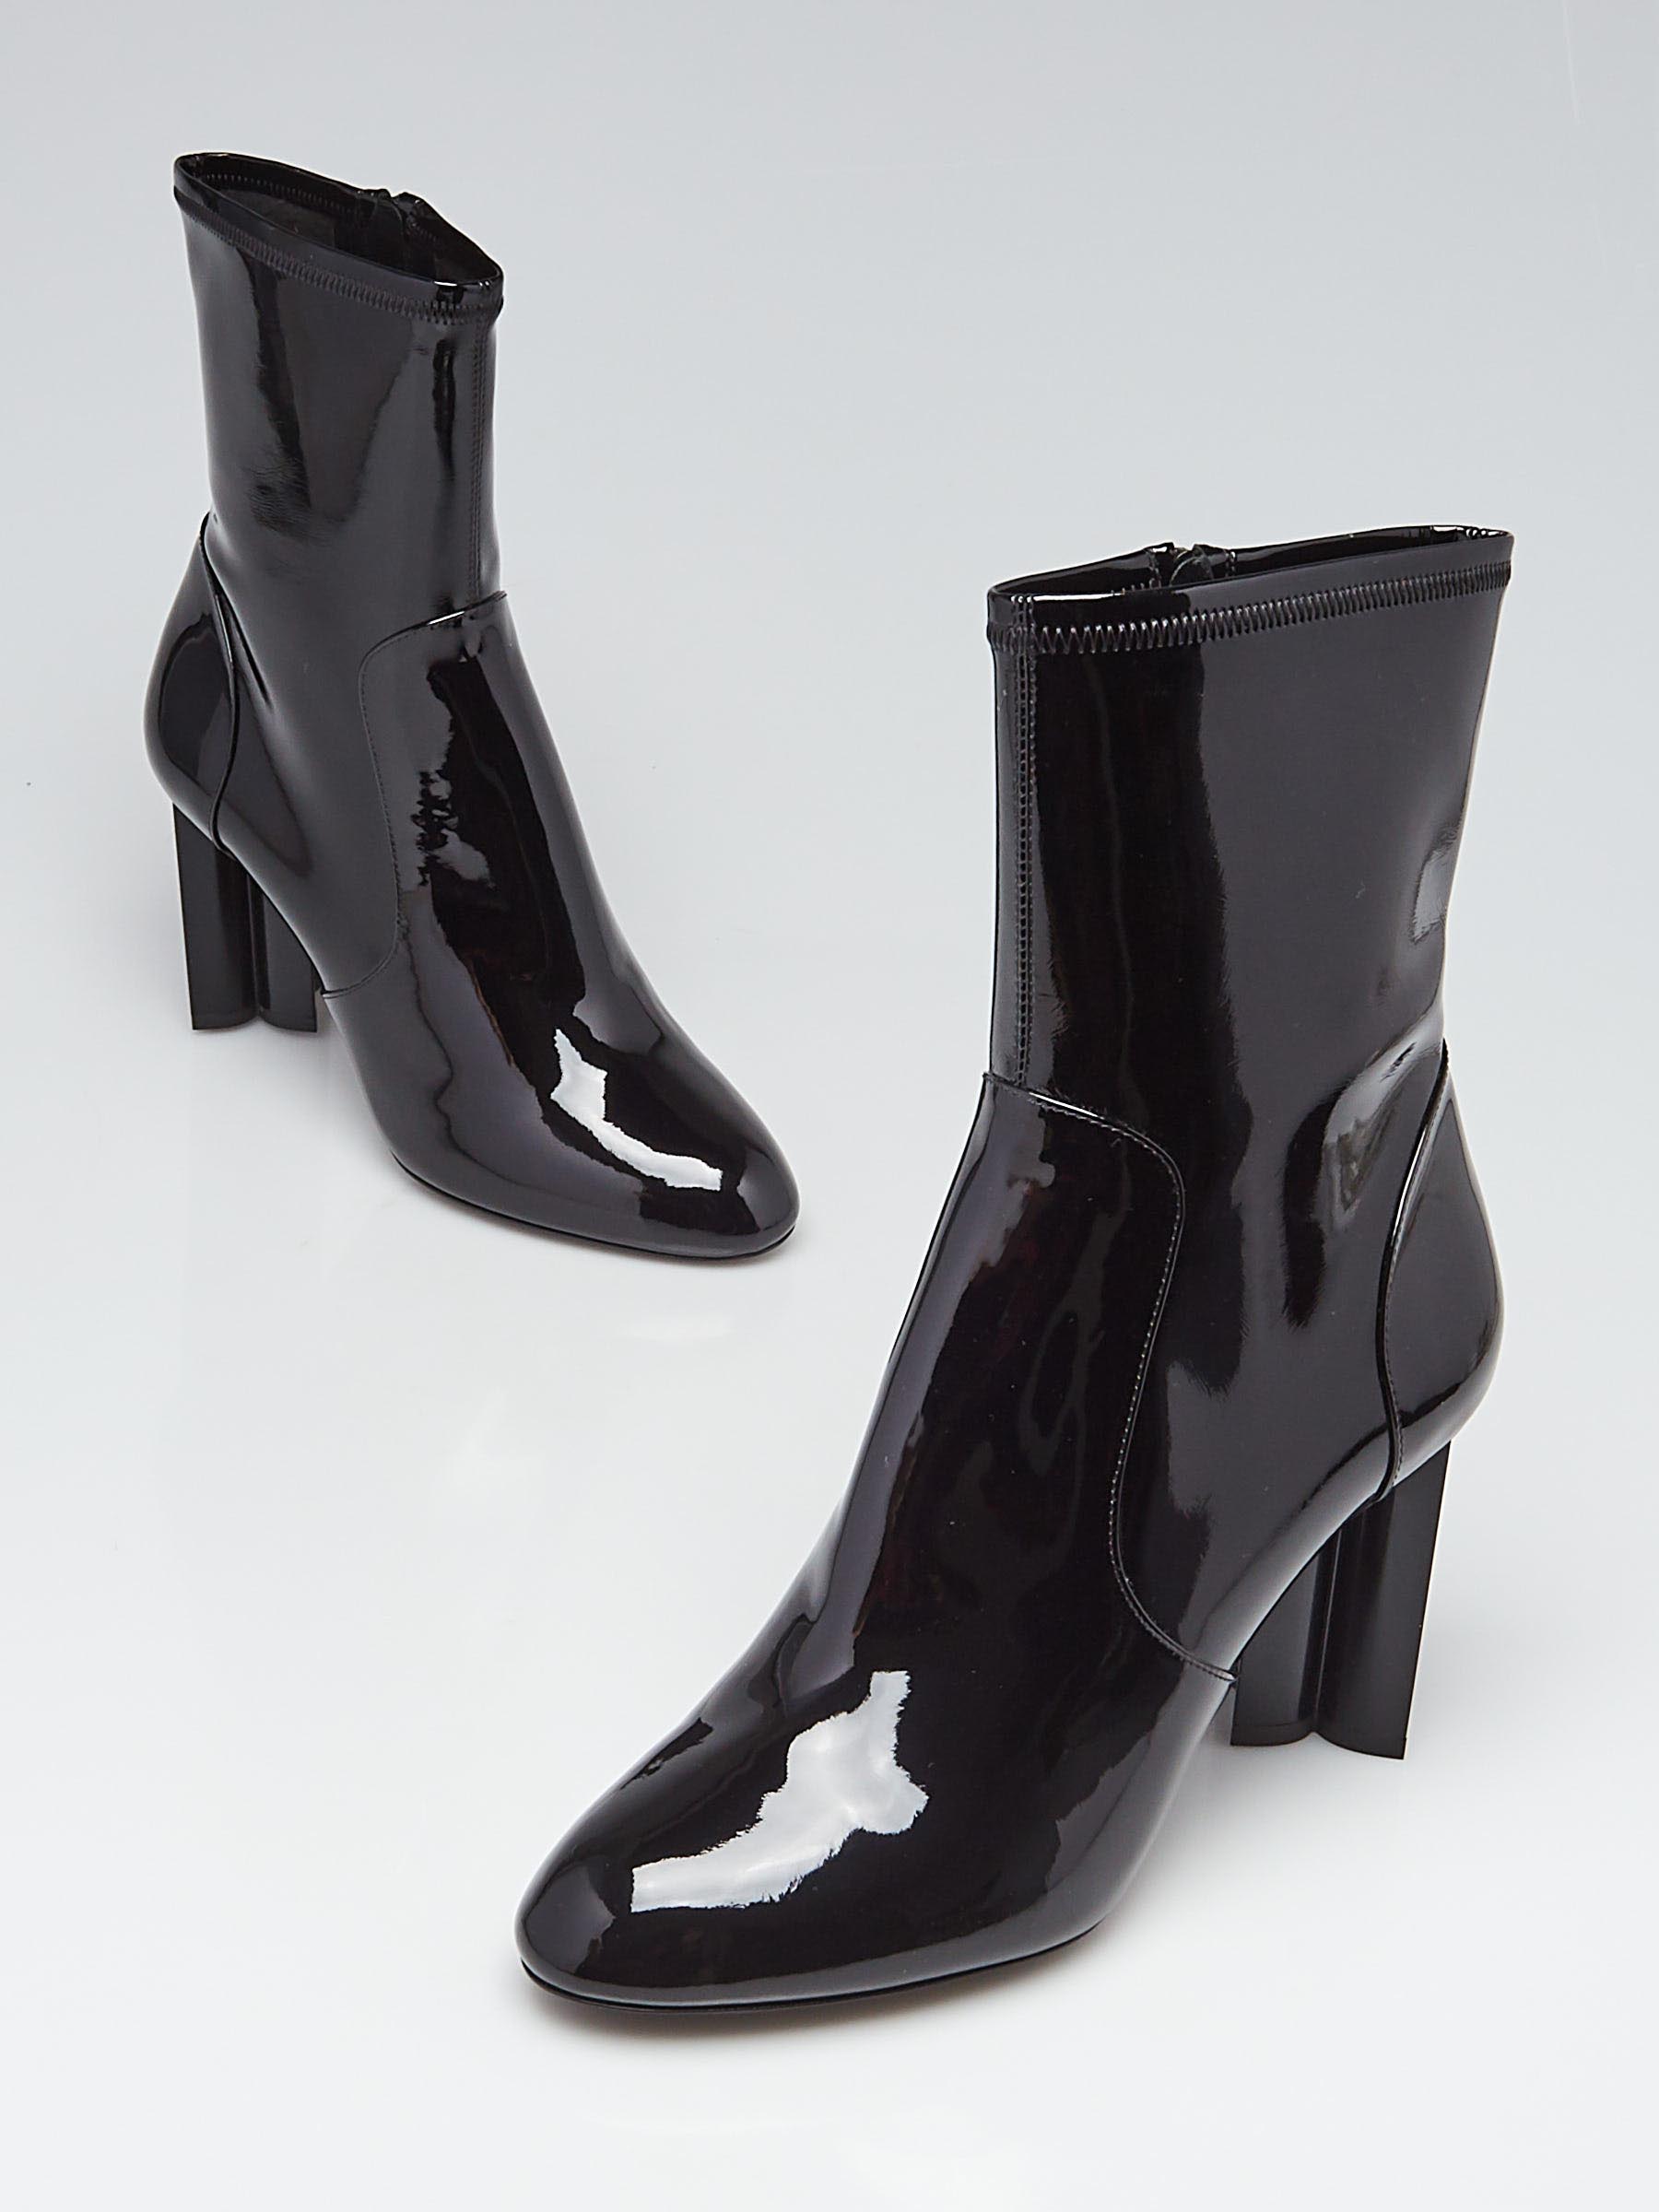 AUTHENTIC LOUIS VUITTON Uniforms Black Patent Silhouette Ankle Boot Bootie  SZ 39